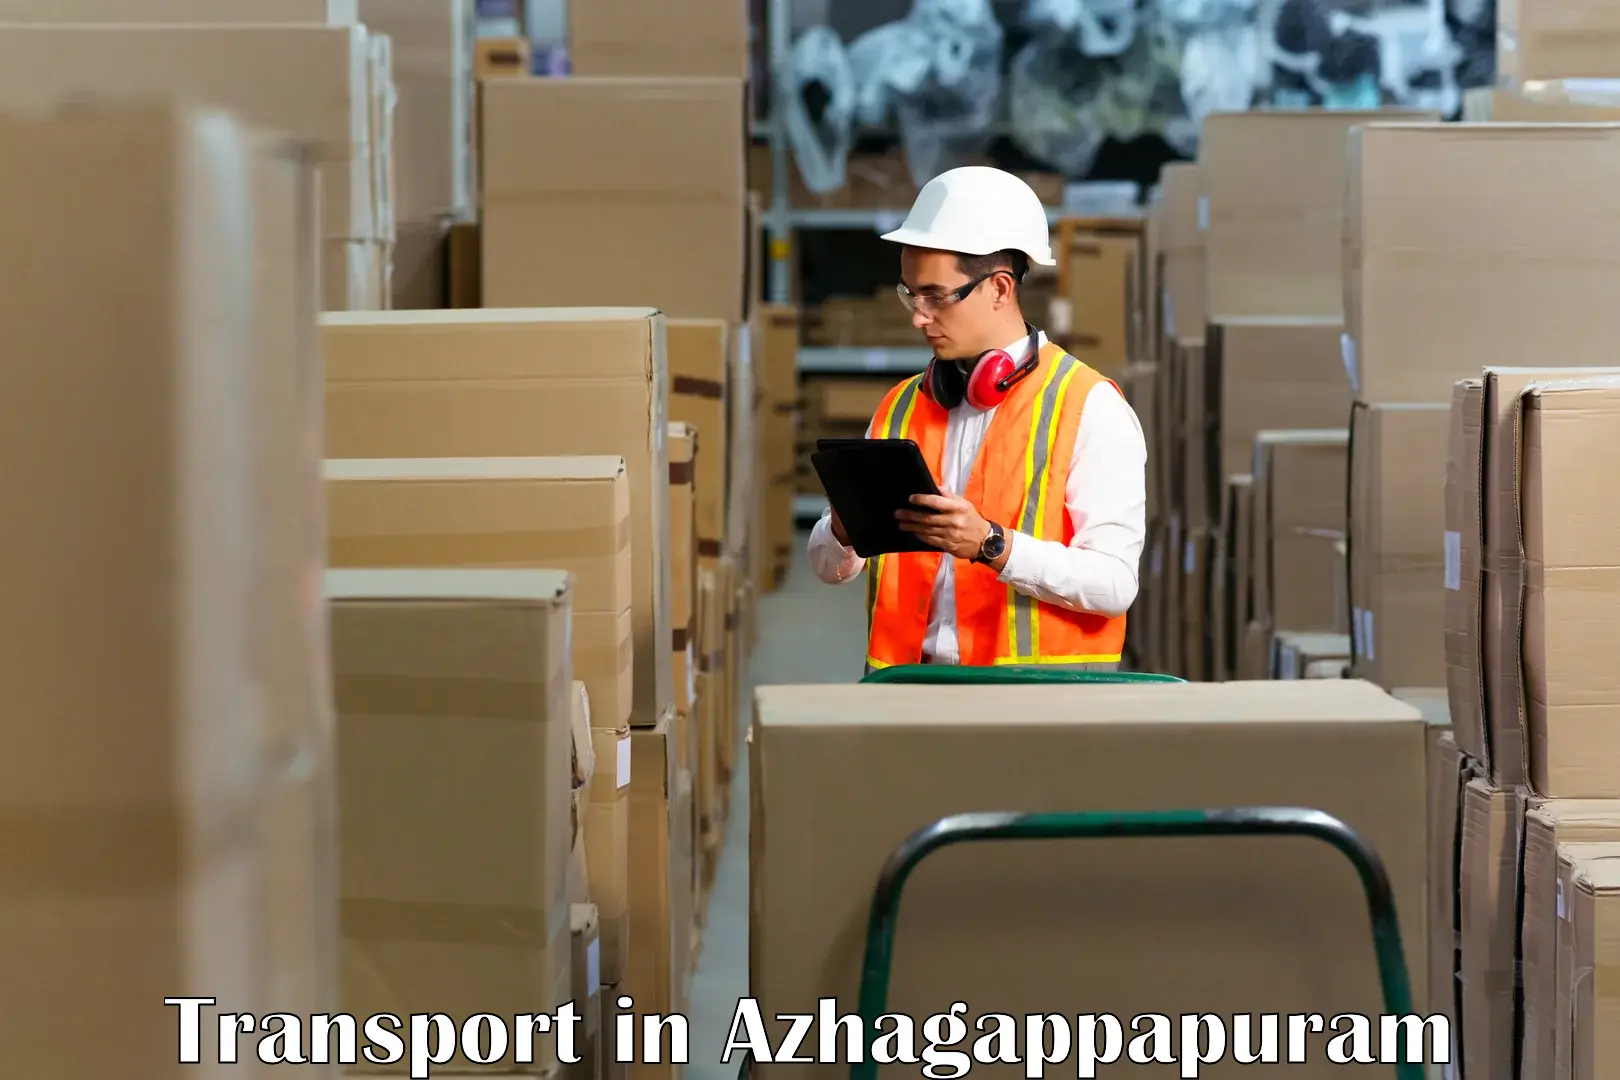 Furniture transport service in Azhagappapuram